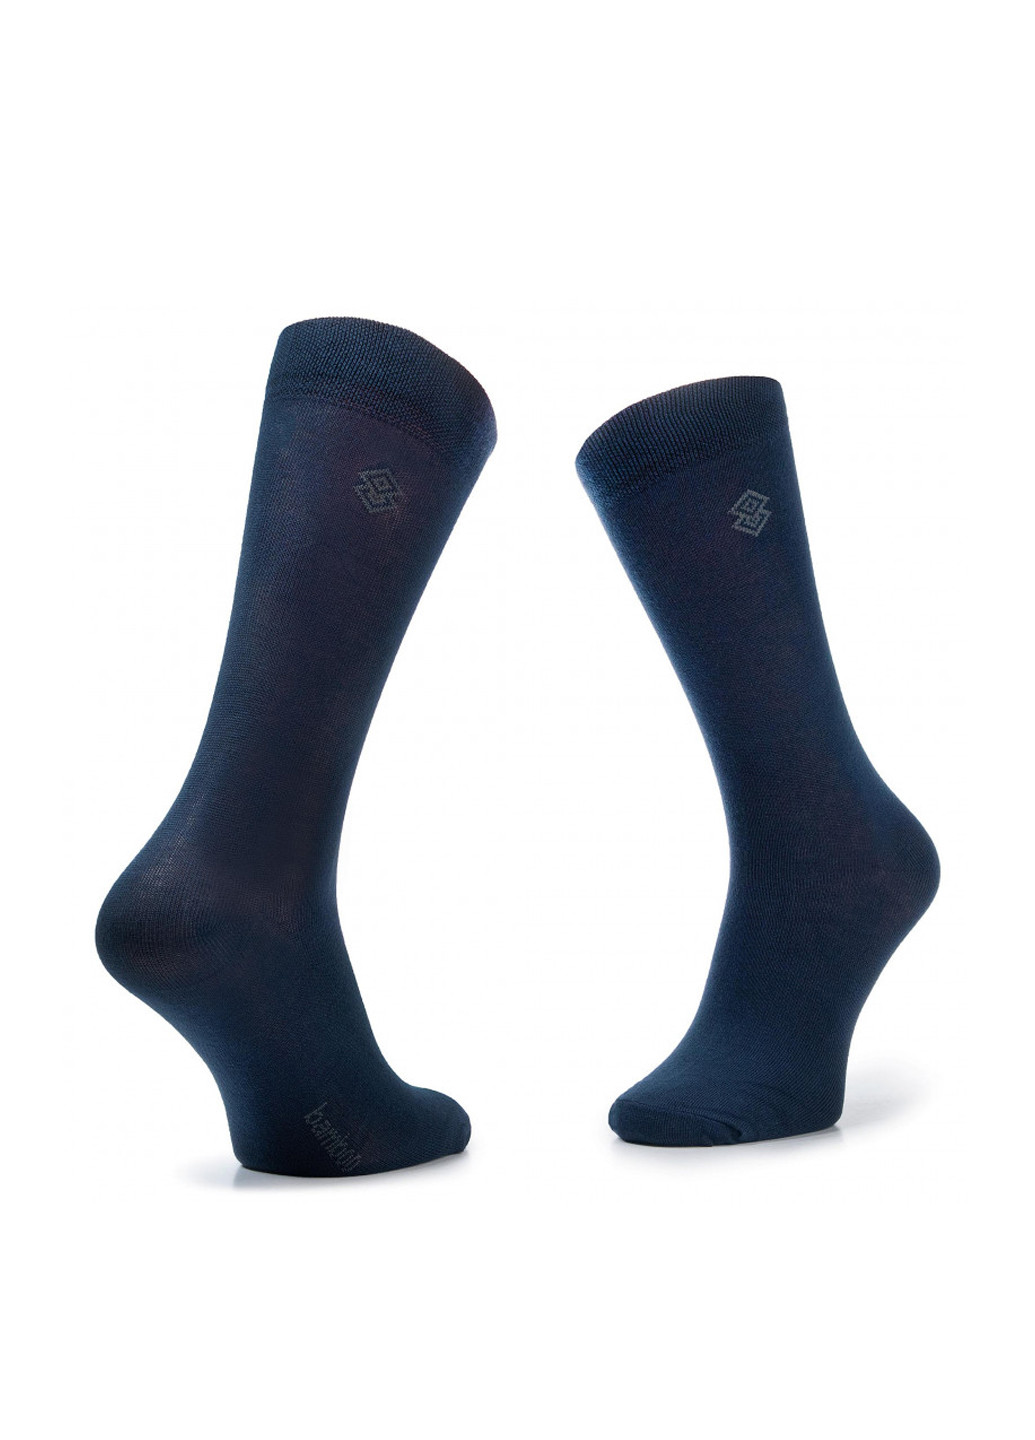 Шкарпетки чоловічі SKARPETA  BAMBOO 42-44 Lasocki SKARPETA BAMBOO 42-44 однотонні темно-сині повсякденні